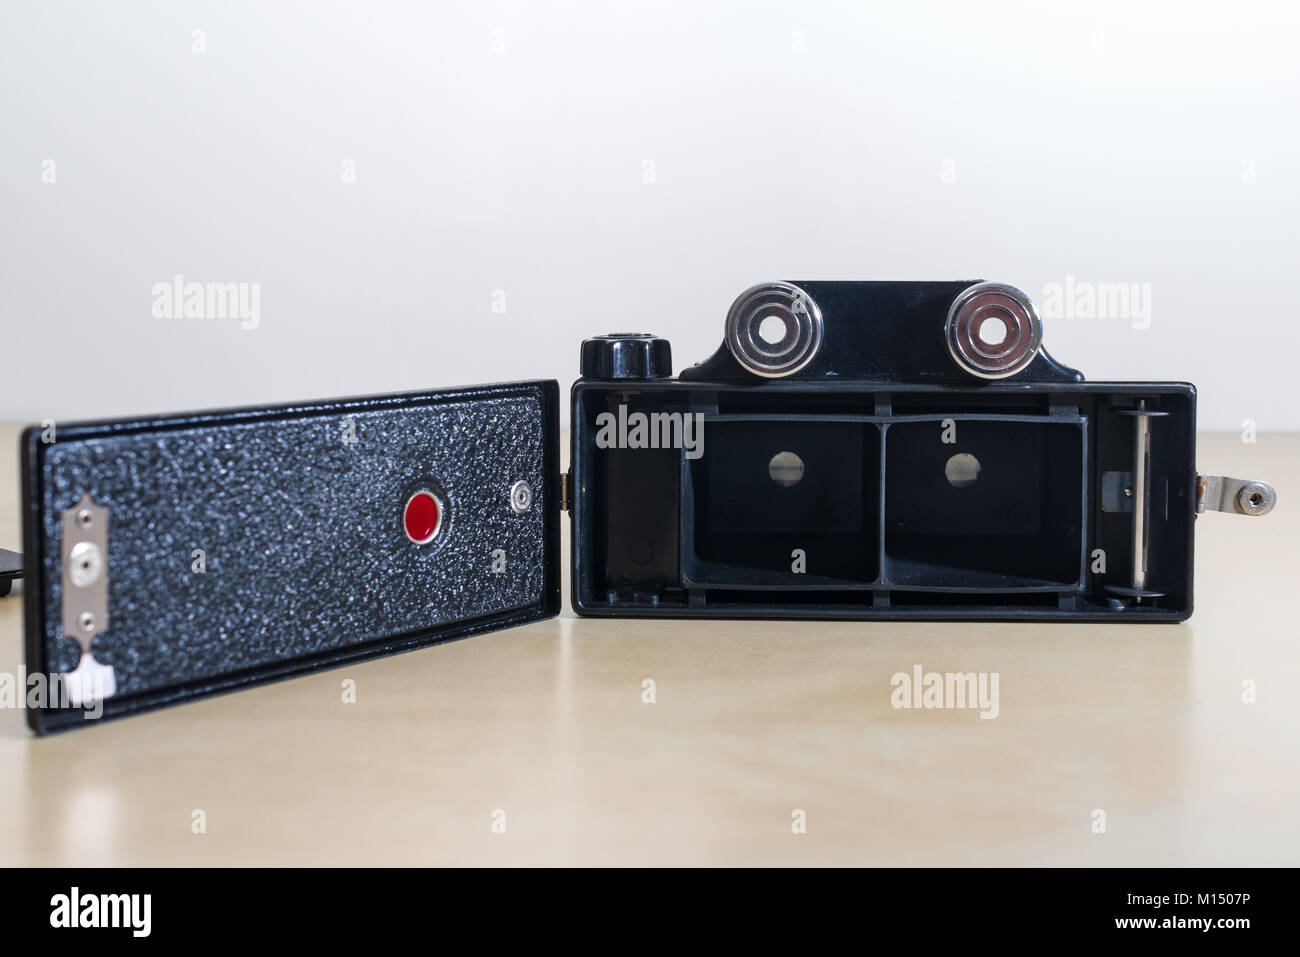 Ein Coronet 3D-Kamera Fernglas Version, von der Coronet Camera Company um 1954 hergestellt, die in der Lage stereoskopische Fotos auf 127 Rollen Film zu nehmen Stockfoto